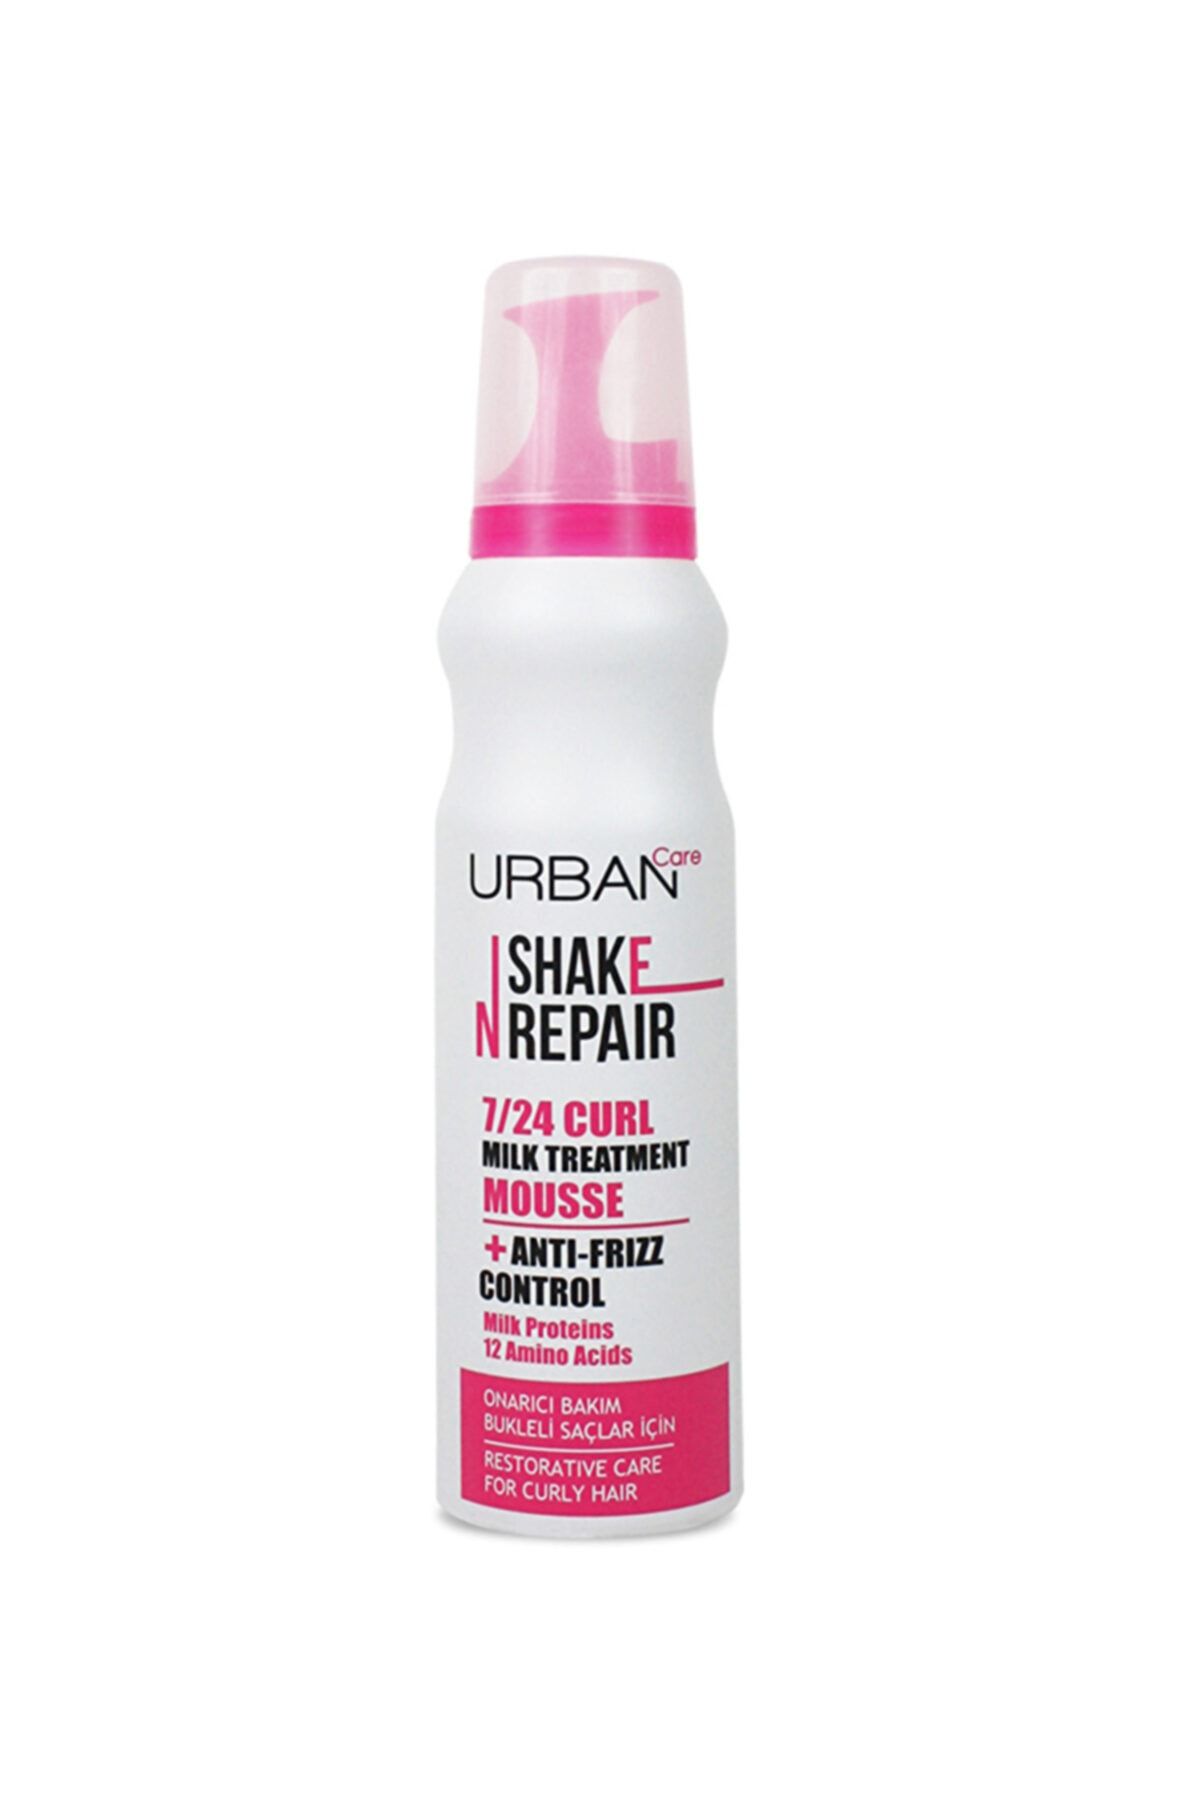 Urban Care Sshake N Repair 7/24 Curl Milk Mouss